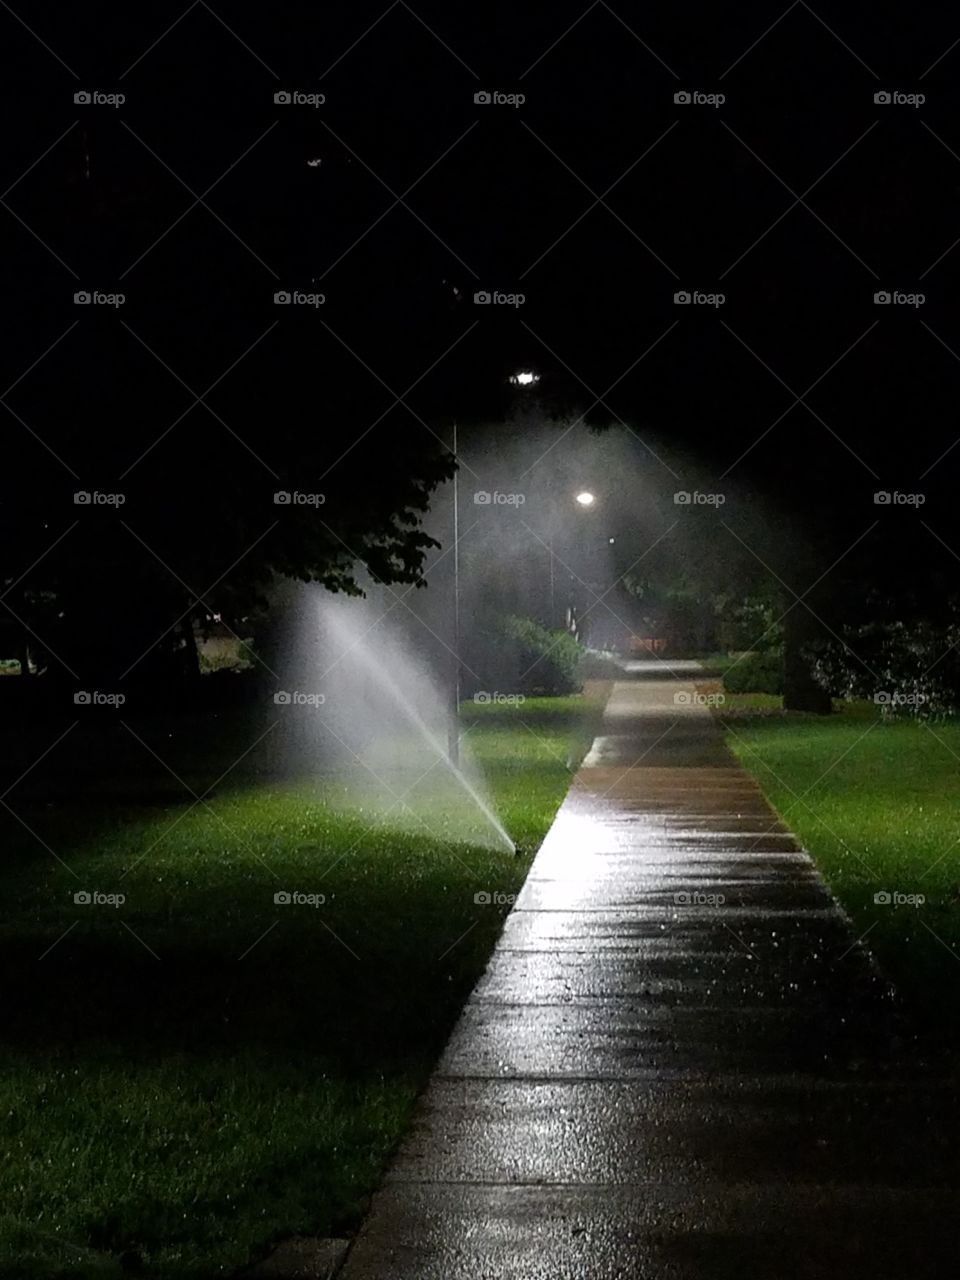 sprinklers on campus at night